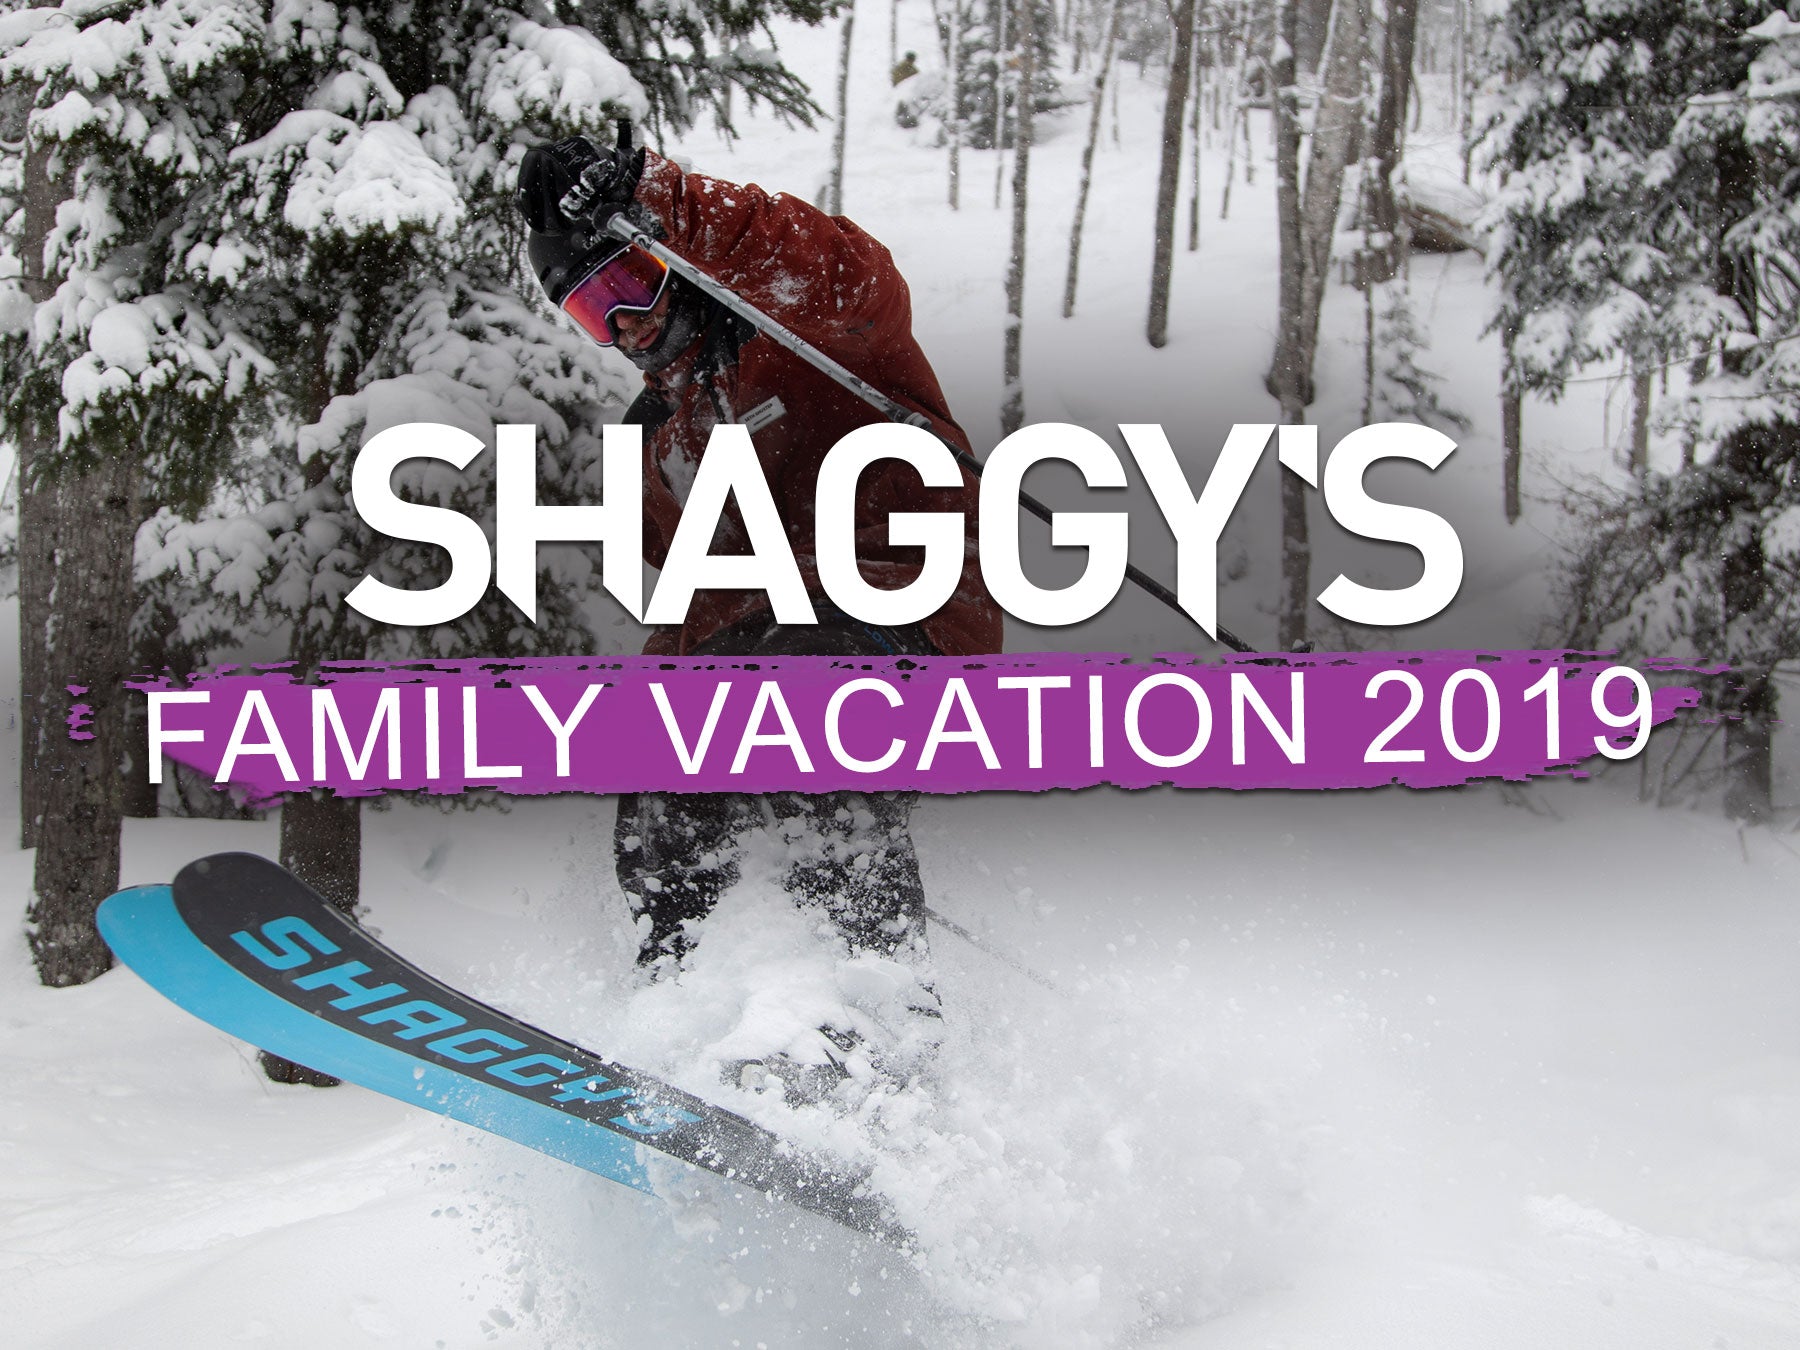 Shaggy's Family Vacation at Mount Bohemia 2019